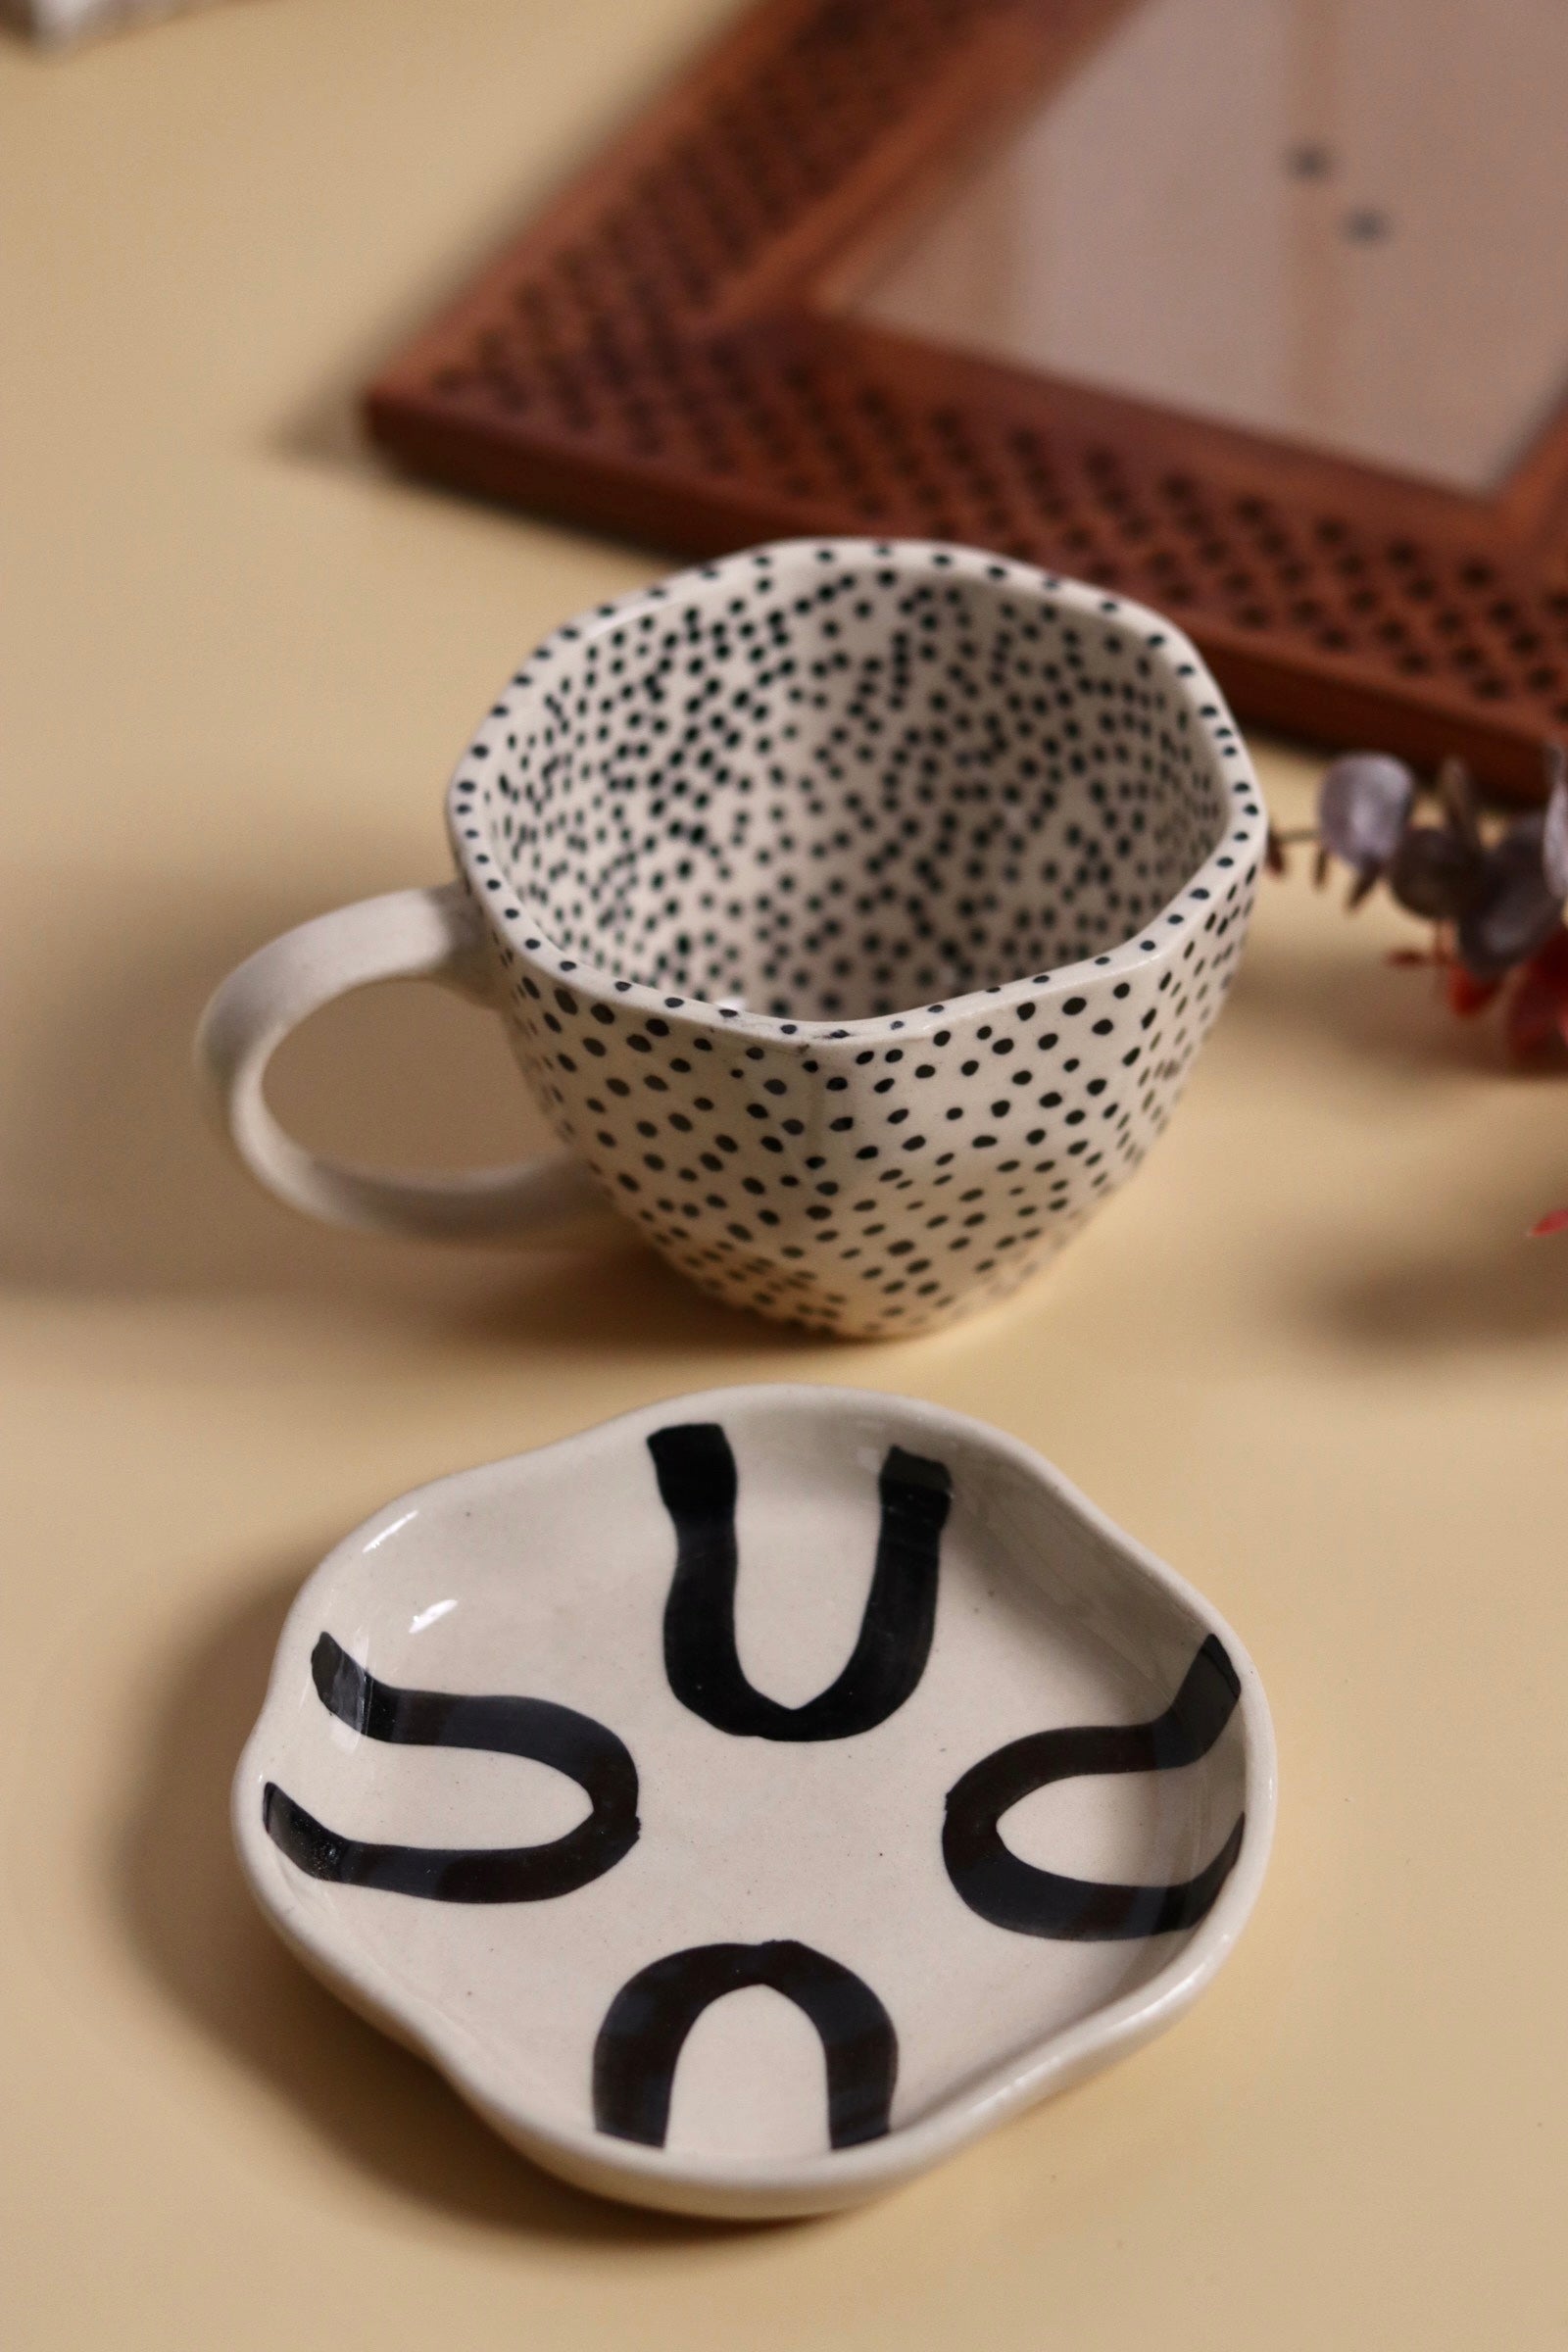 handmade mug & dessert plate, made by ceramic